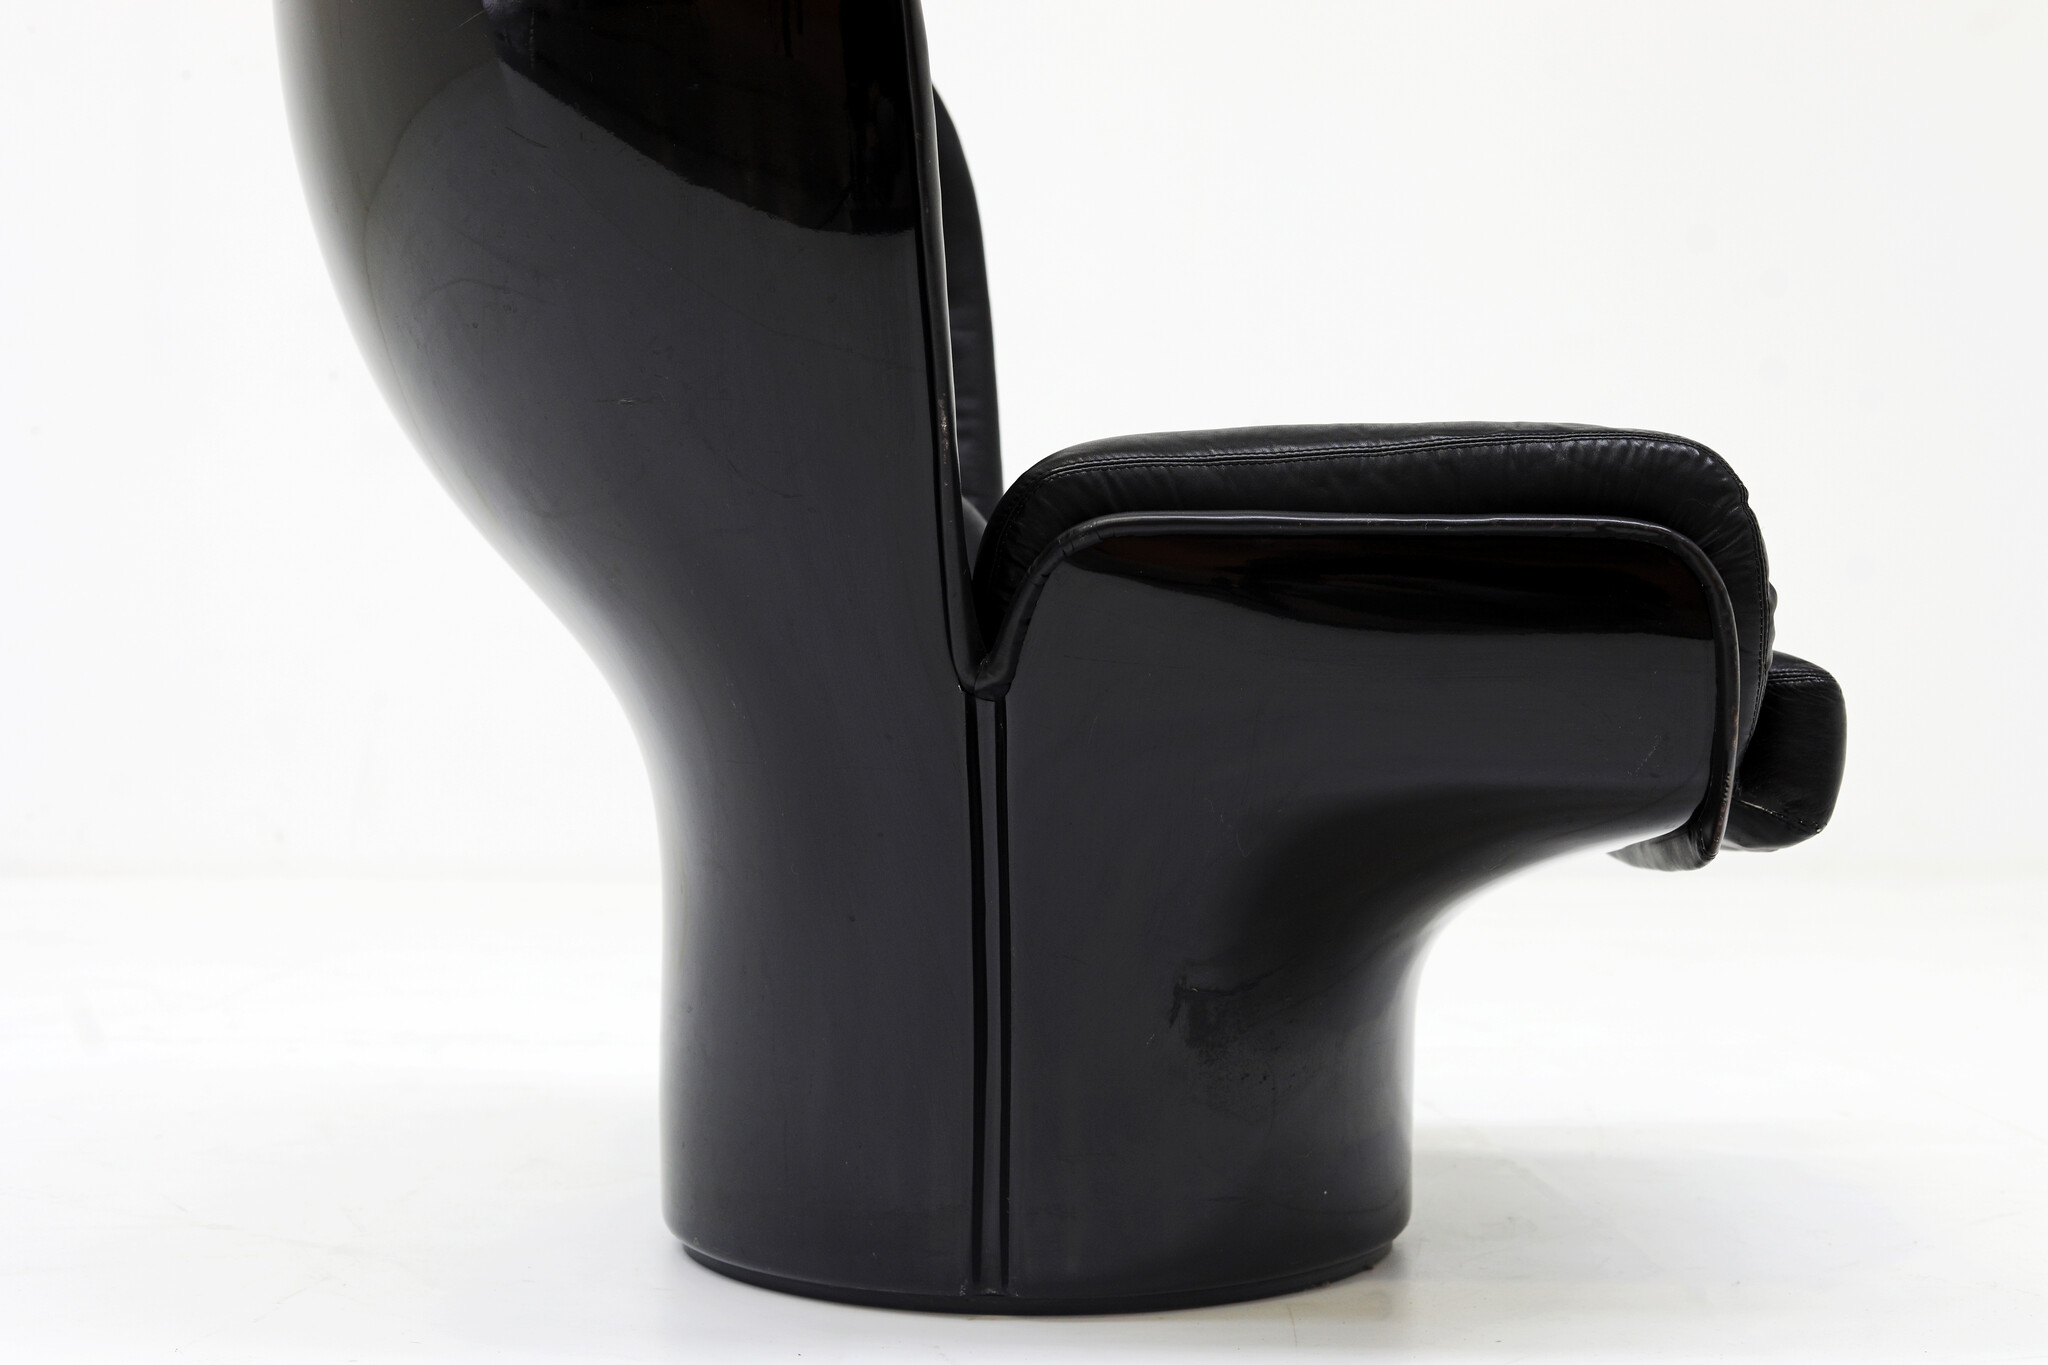 Zeldzame Full Black Edition Elda Chair ontworpen door Joe Colombo voor Comfort, 1963